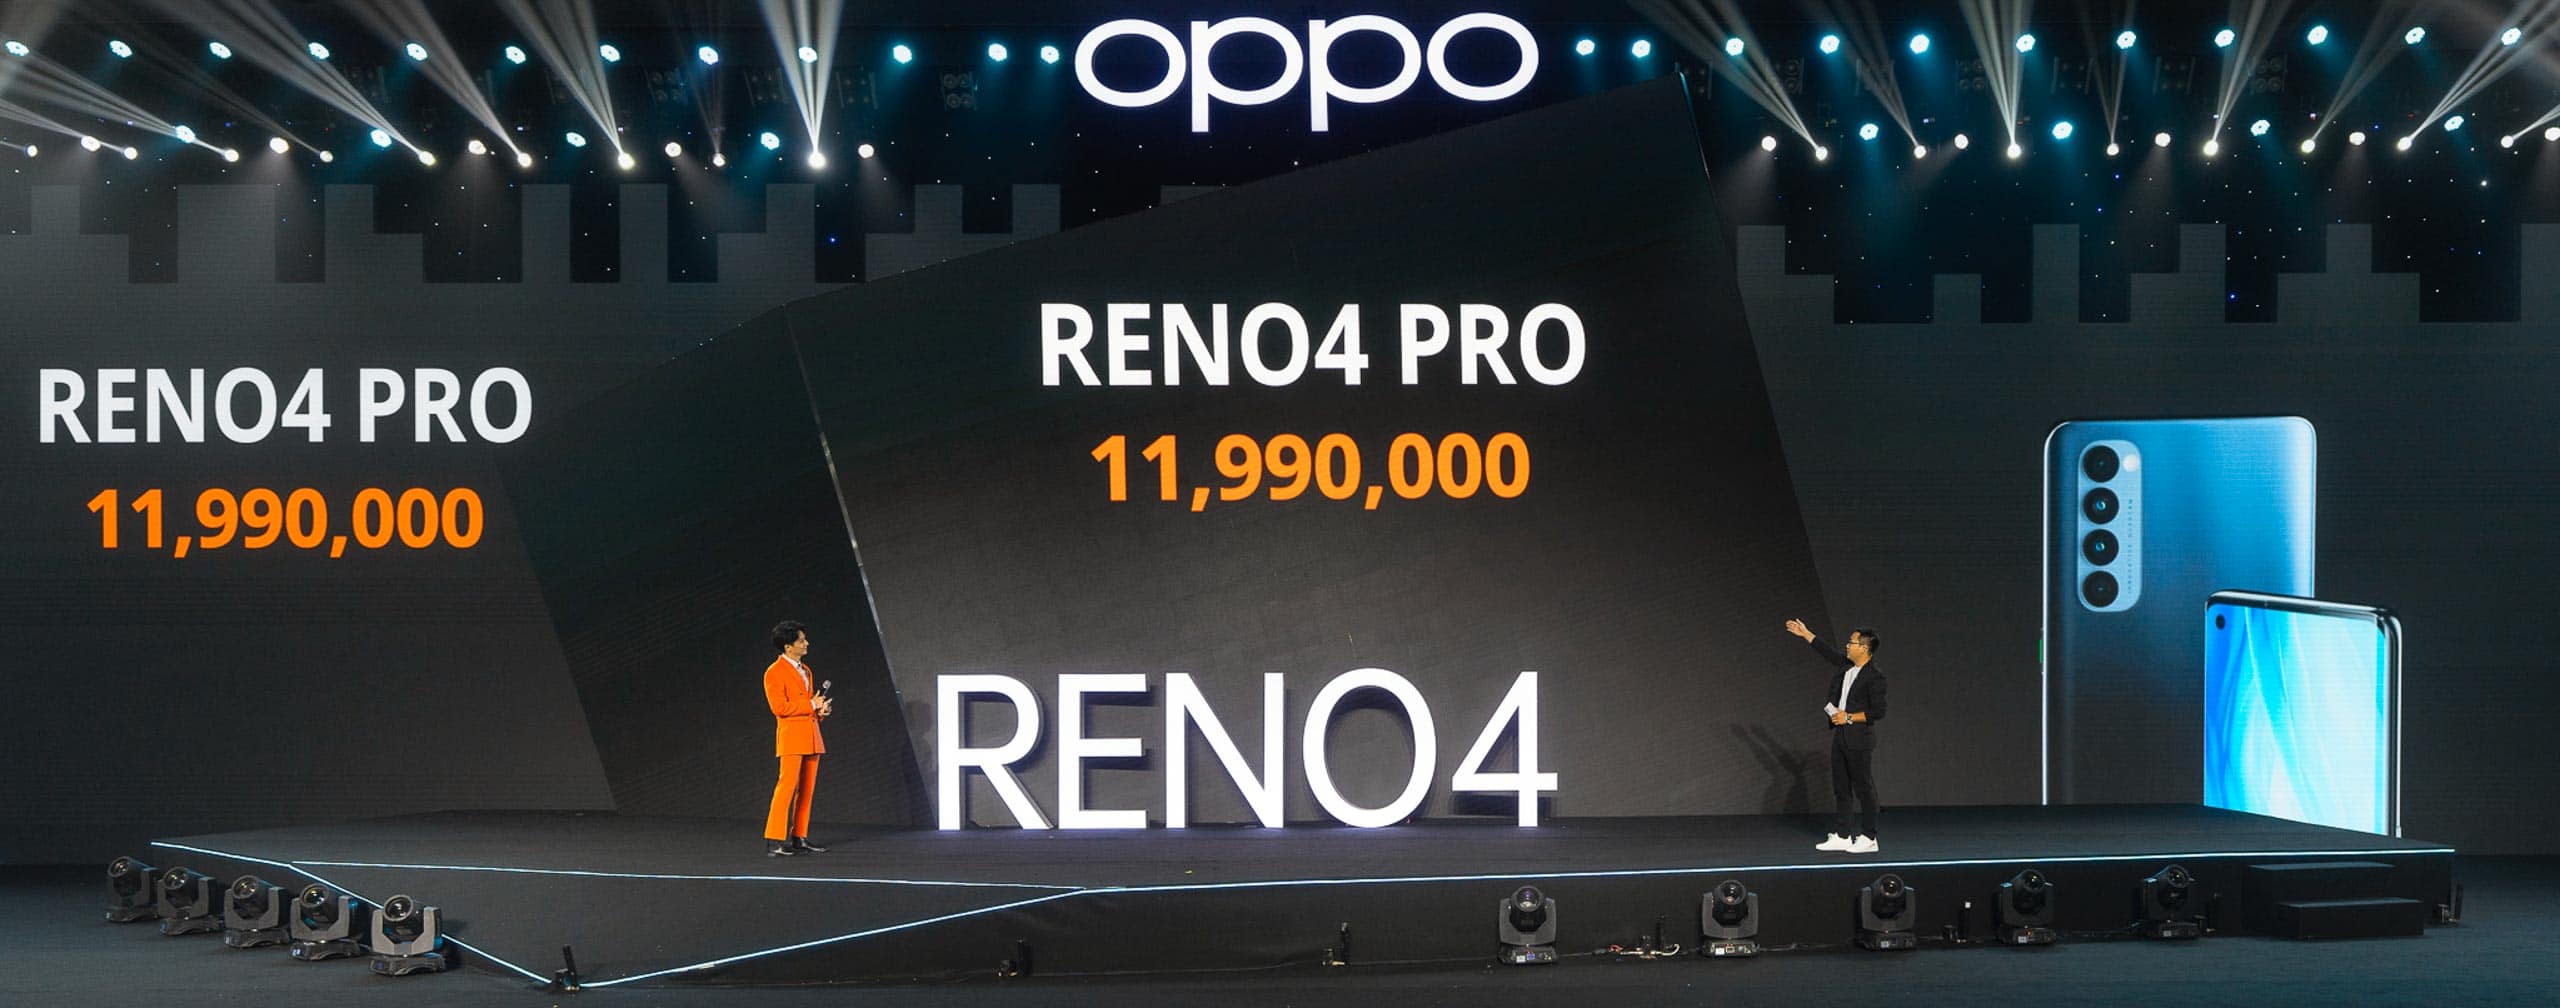 OPPO Reno4 và Reno4 Pro ra mắt tại Việt Nam: Chụp Chân dung màu AI, sạc siêu nhanh, giá từ 8,490,000 VND